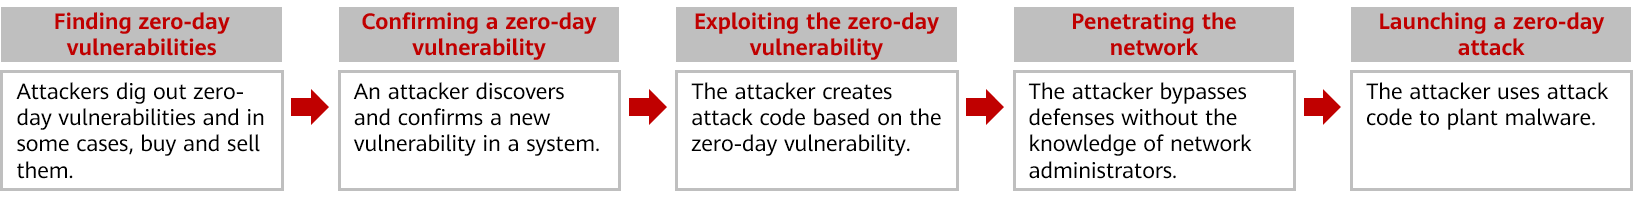 Process of a zero-day vulnerability leading to a zero-day attack